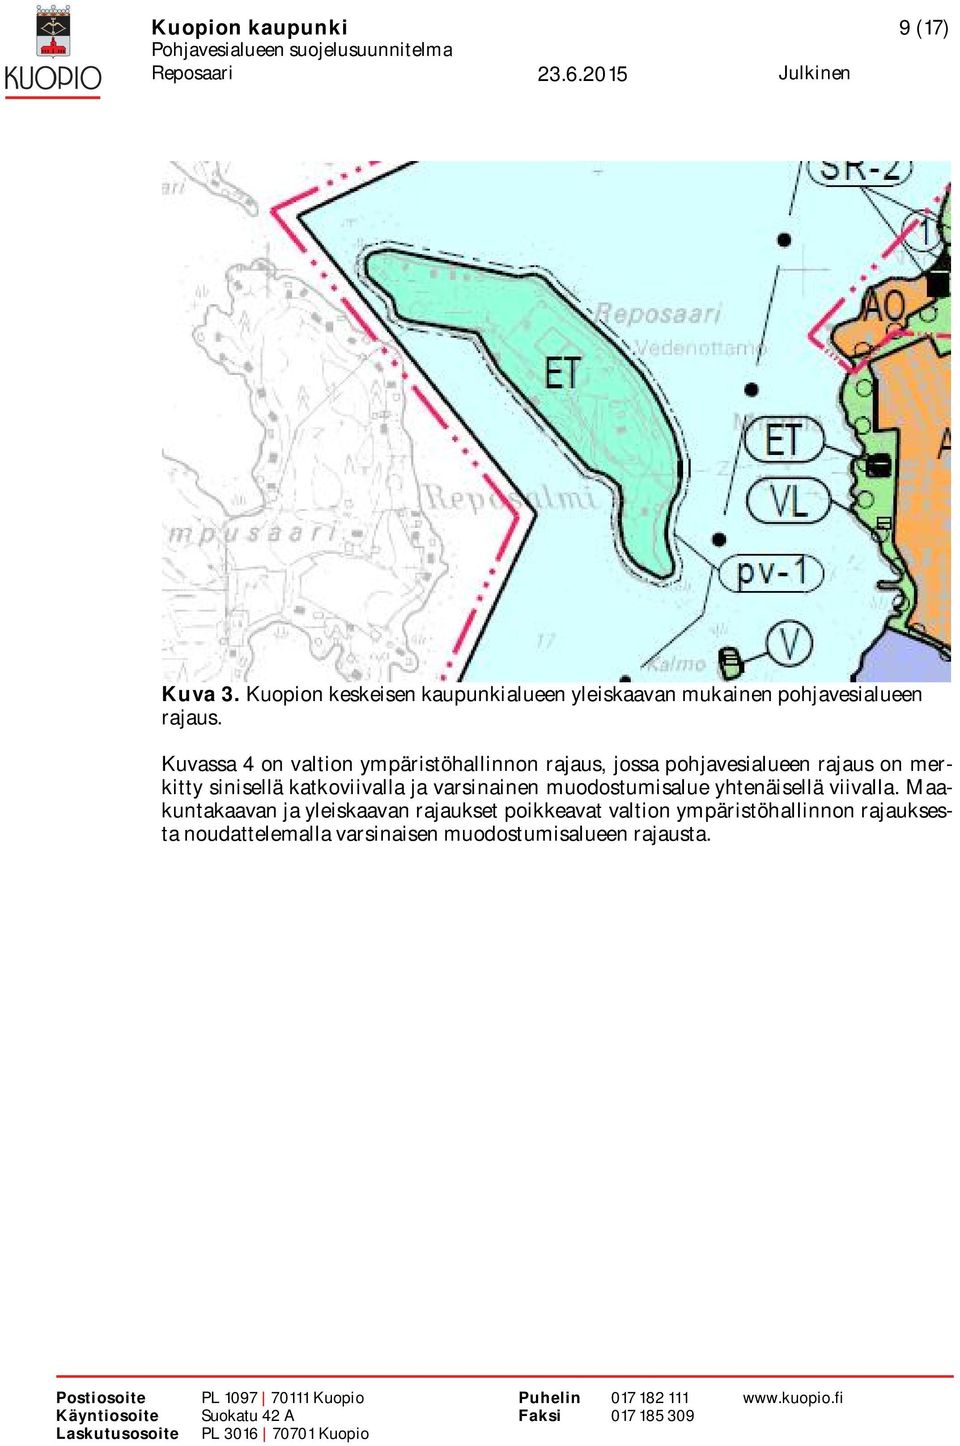 Kuvassa 4 on valtion ympäristöhallinnon rajaus, jossa pohjavesialueen rajaus on merkitty sinisellä